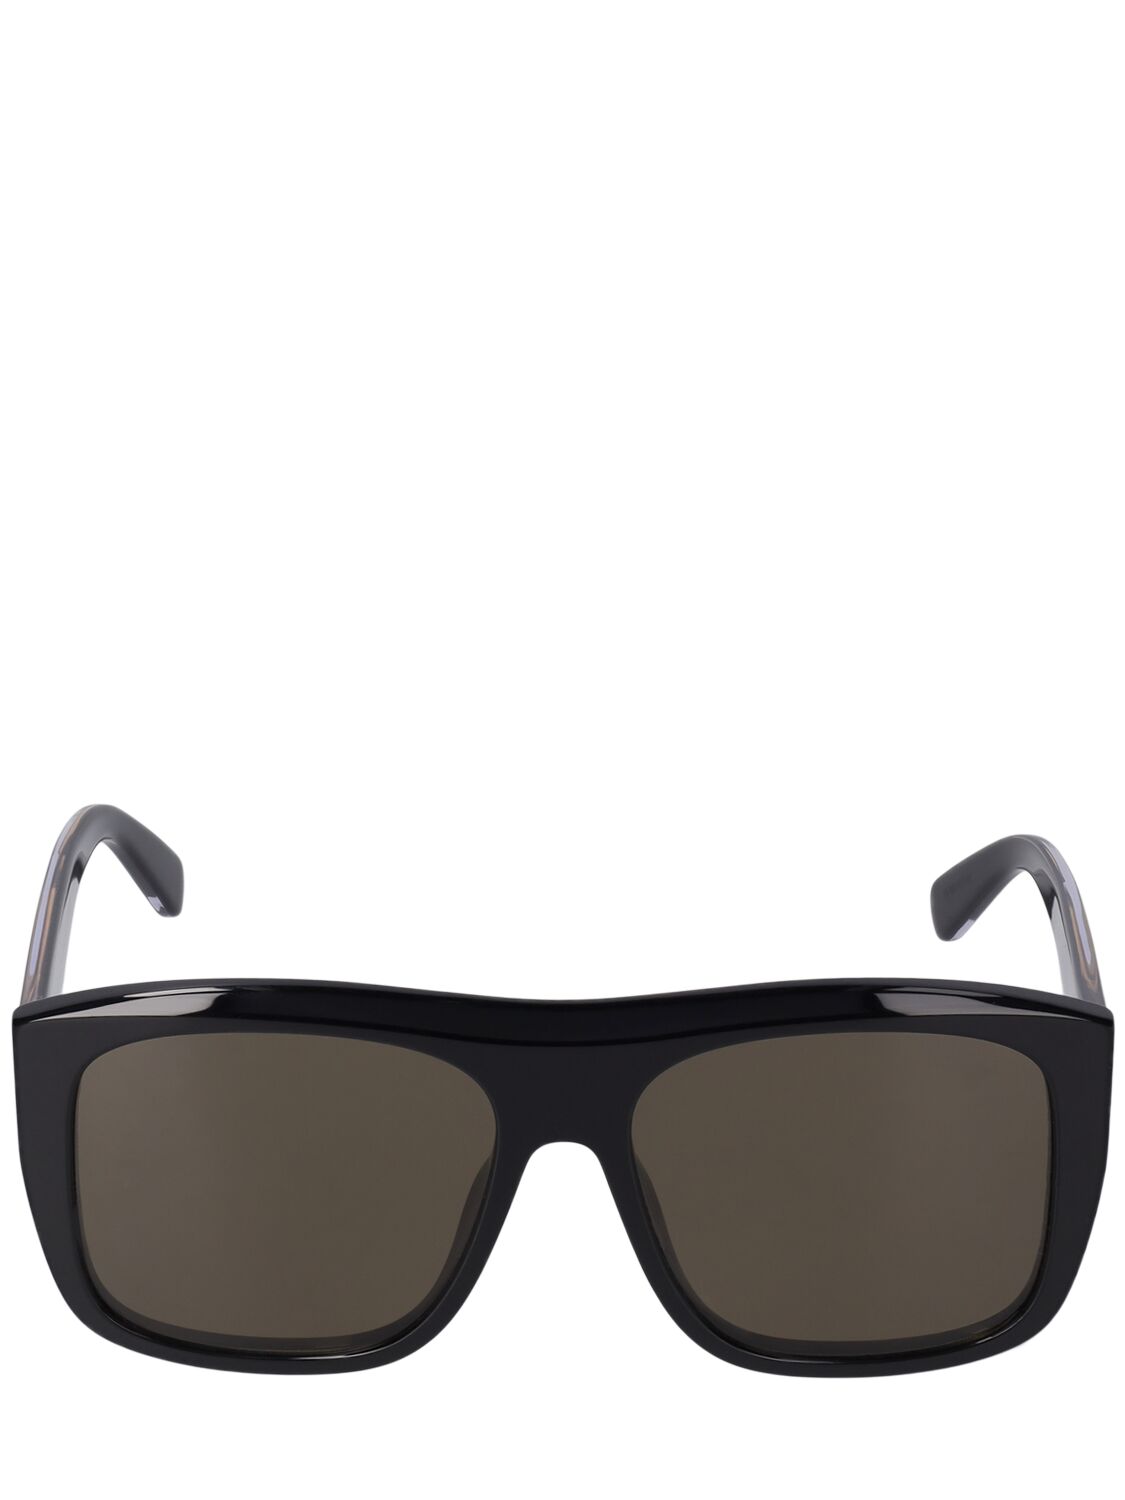 Stella Mccartney Squared Acetate Sunglasses In Black,green